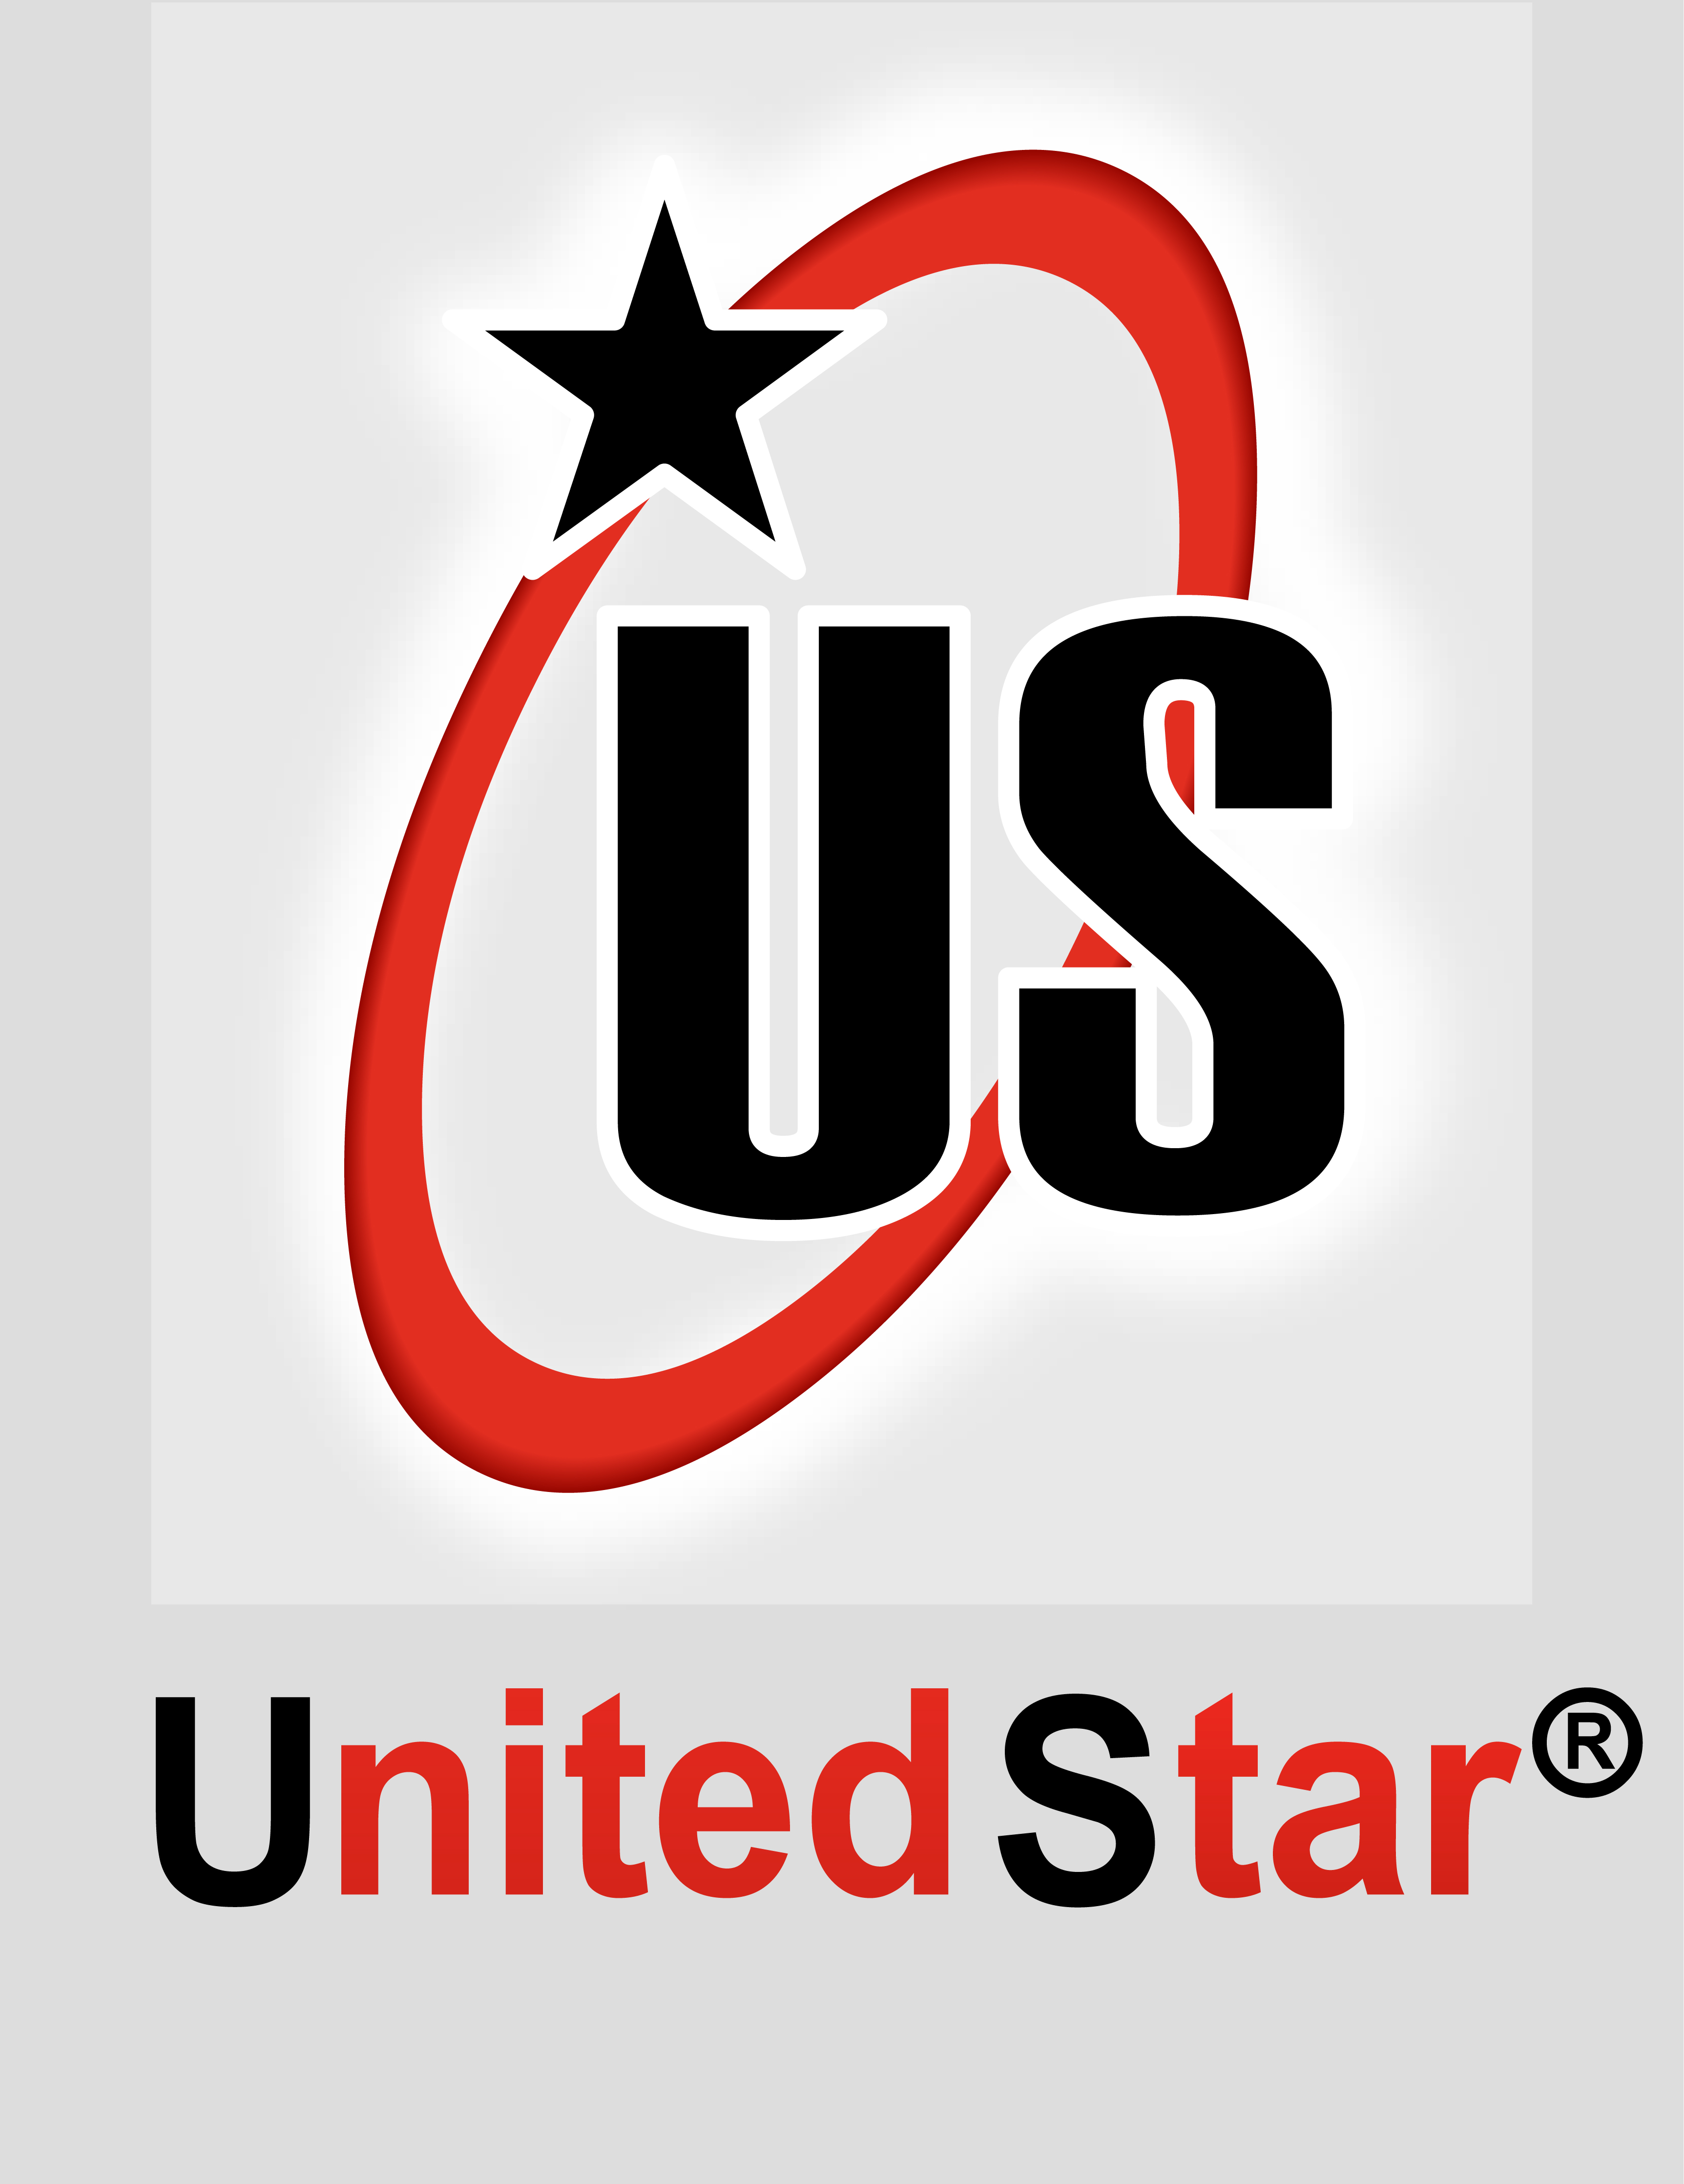 UnitedStar